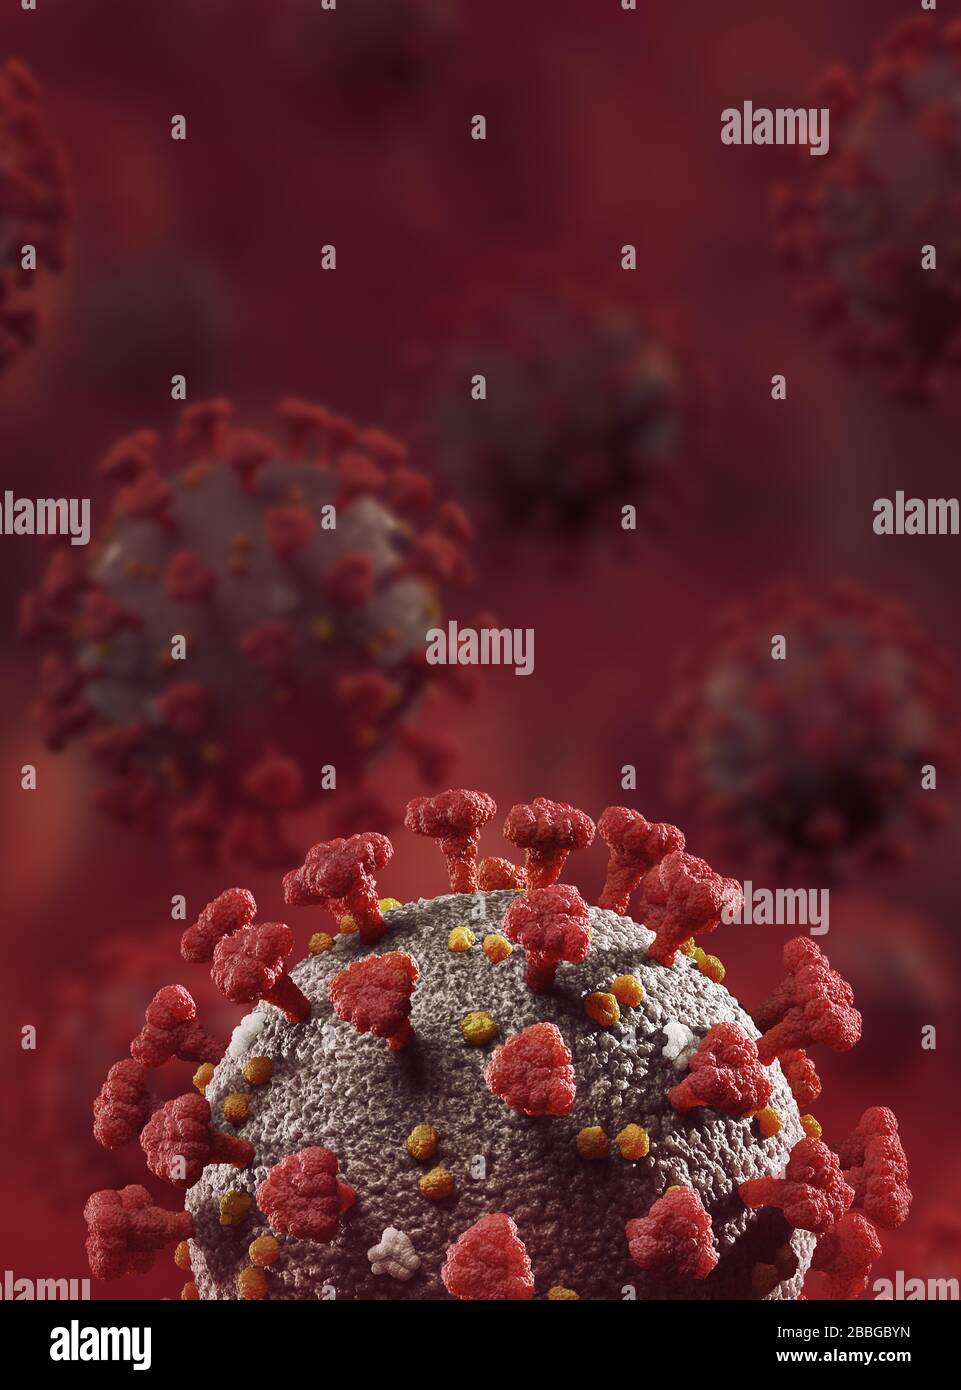 Coronavirus, COVID-19, particelle di virus che diffondono Corona, virioni. SARS-COV-2 Illustrazione medica artistica 3D a colori su sfondo rosso scuro di sangue Foto Stock